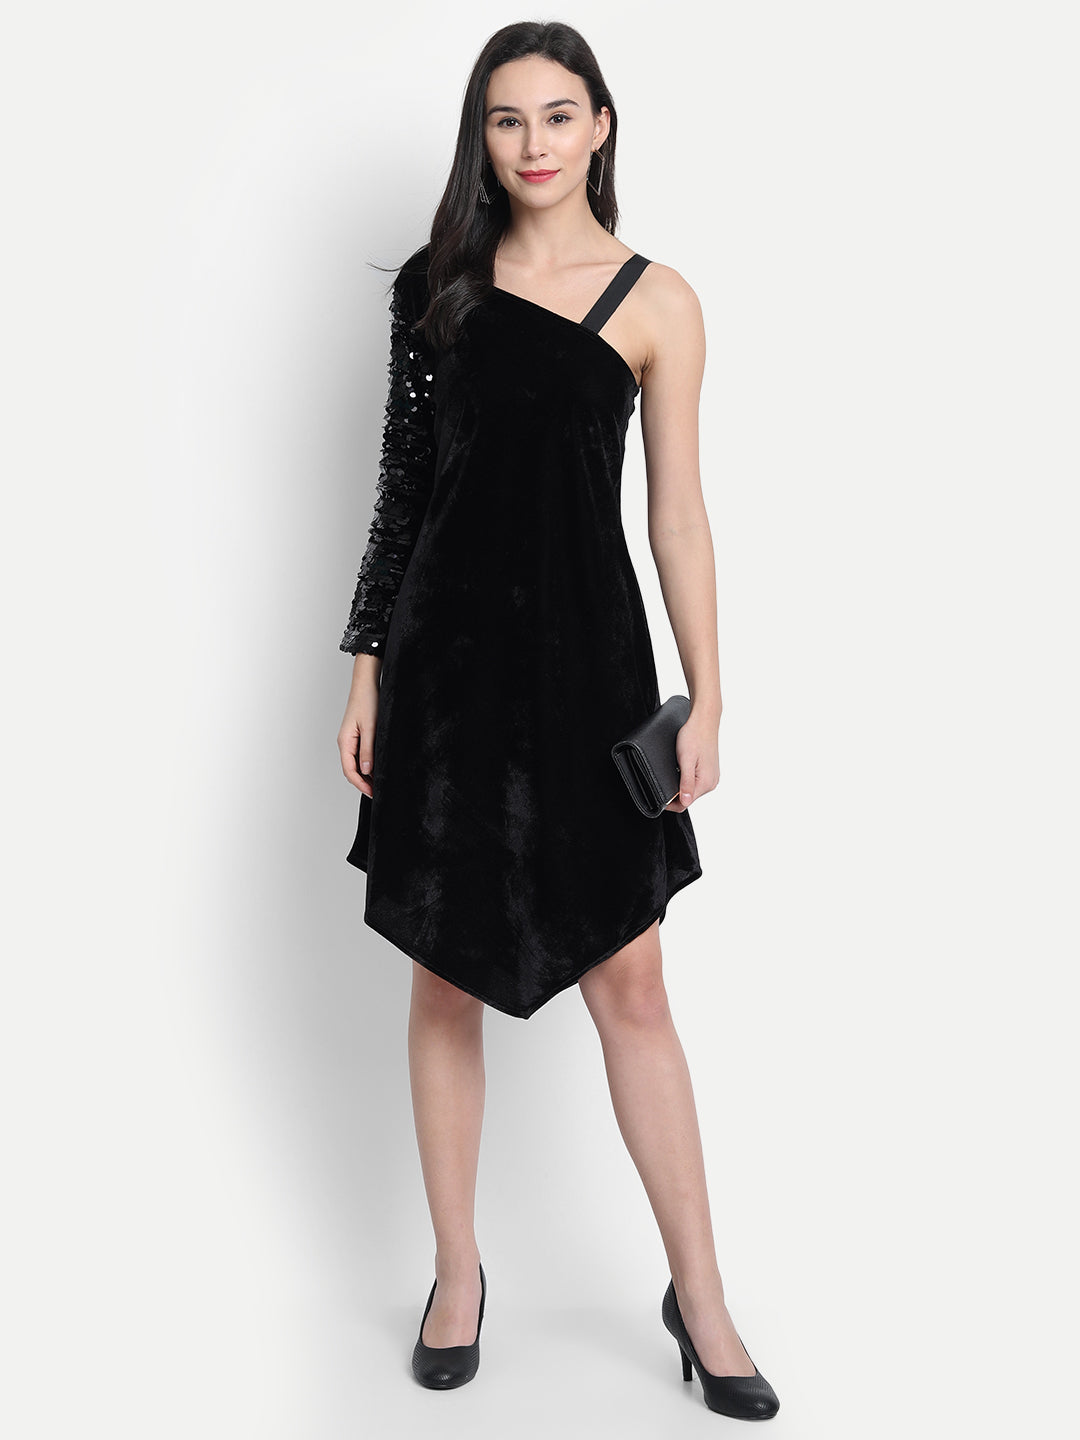 LY2 Elegant one shoulder strap black sequins dress